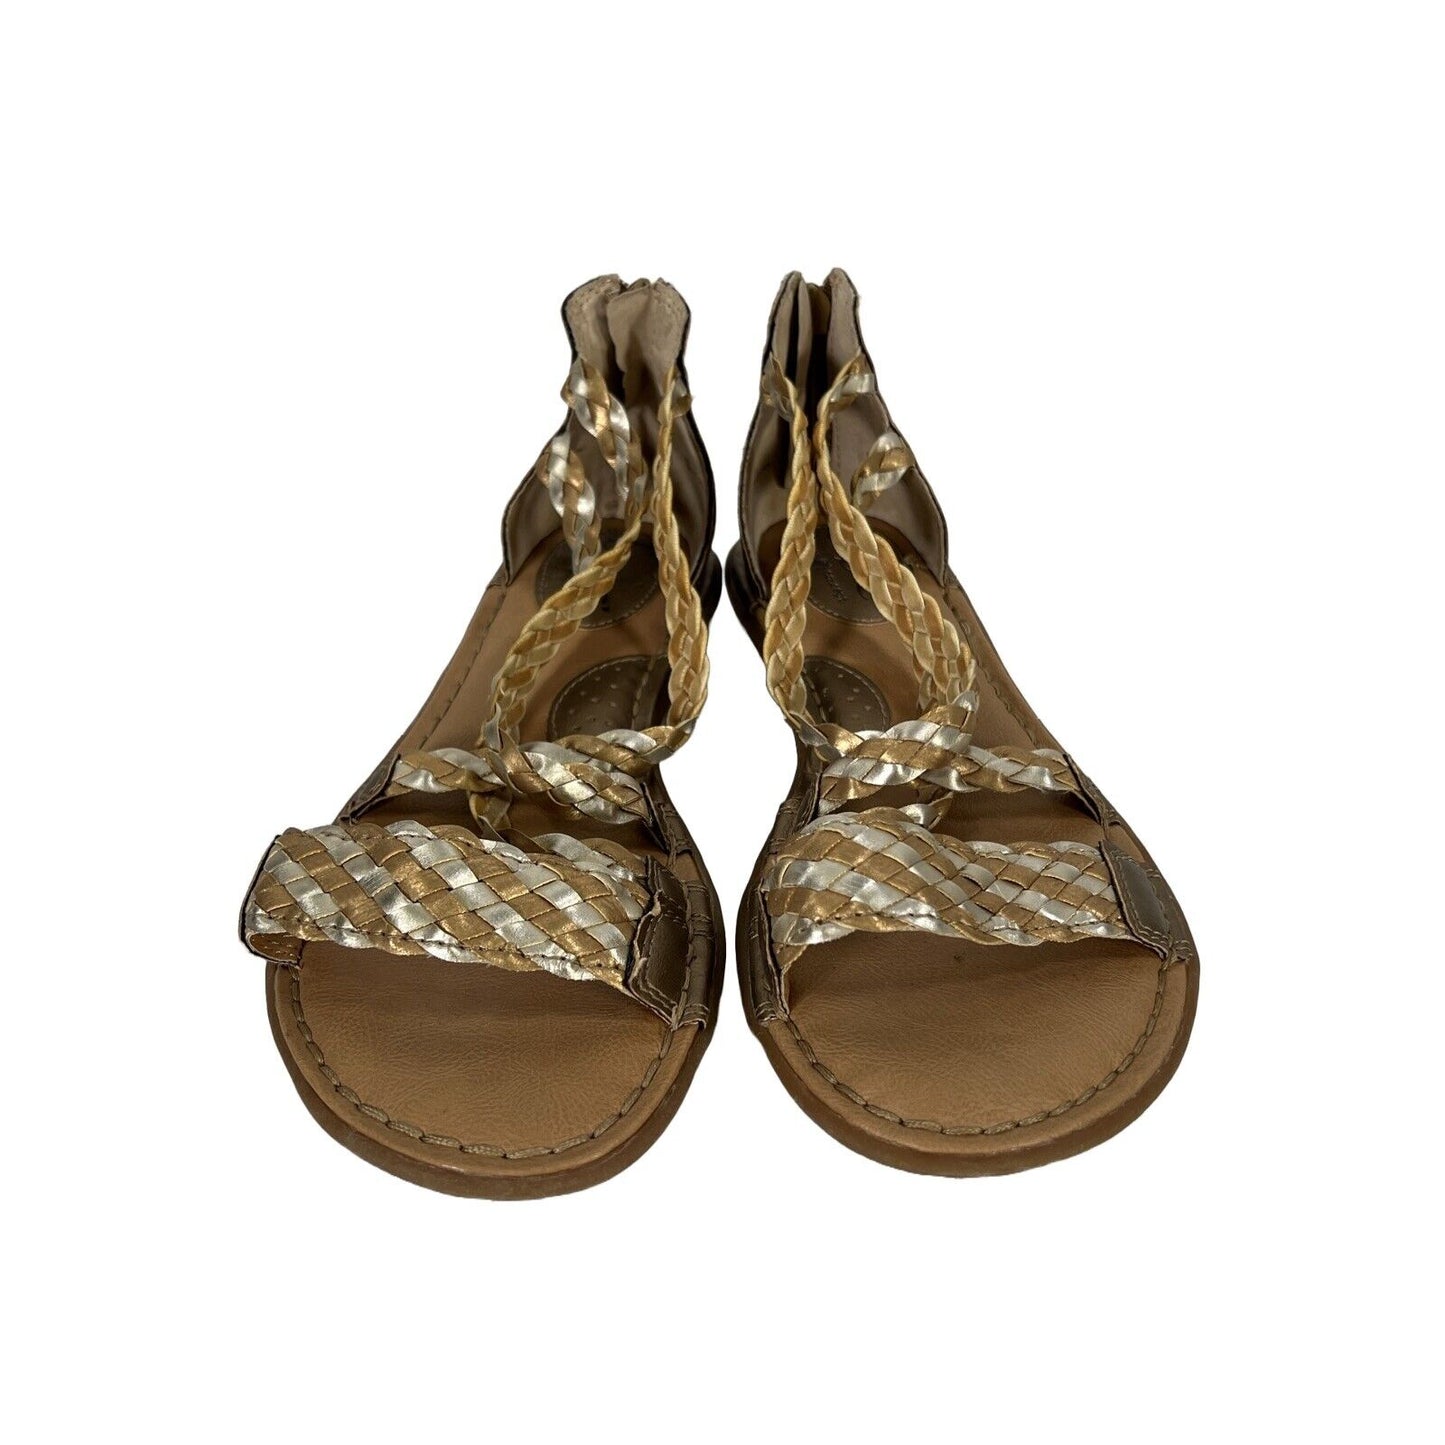 BOC Women's Gold/Bronze Braided Strappy Sandals - 8